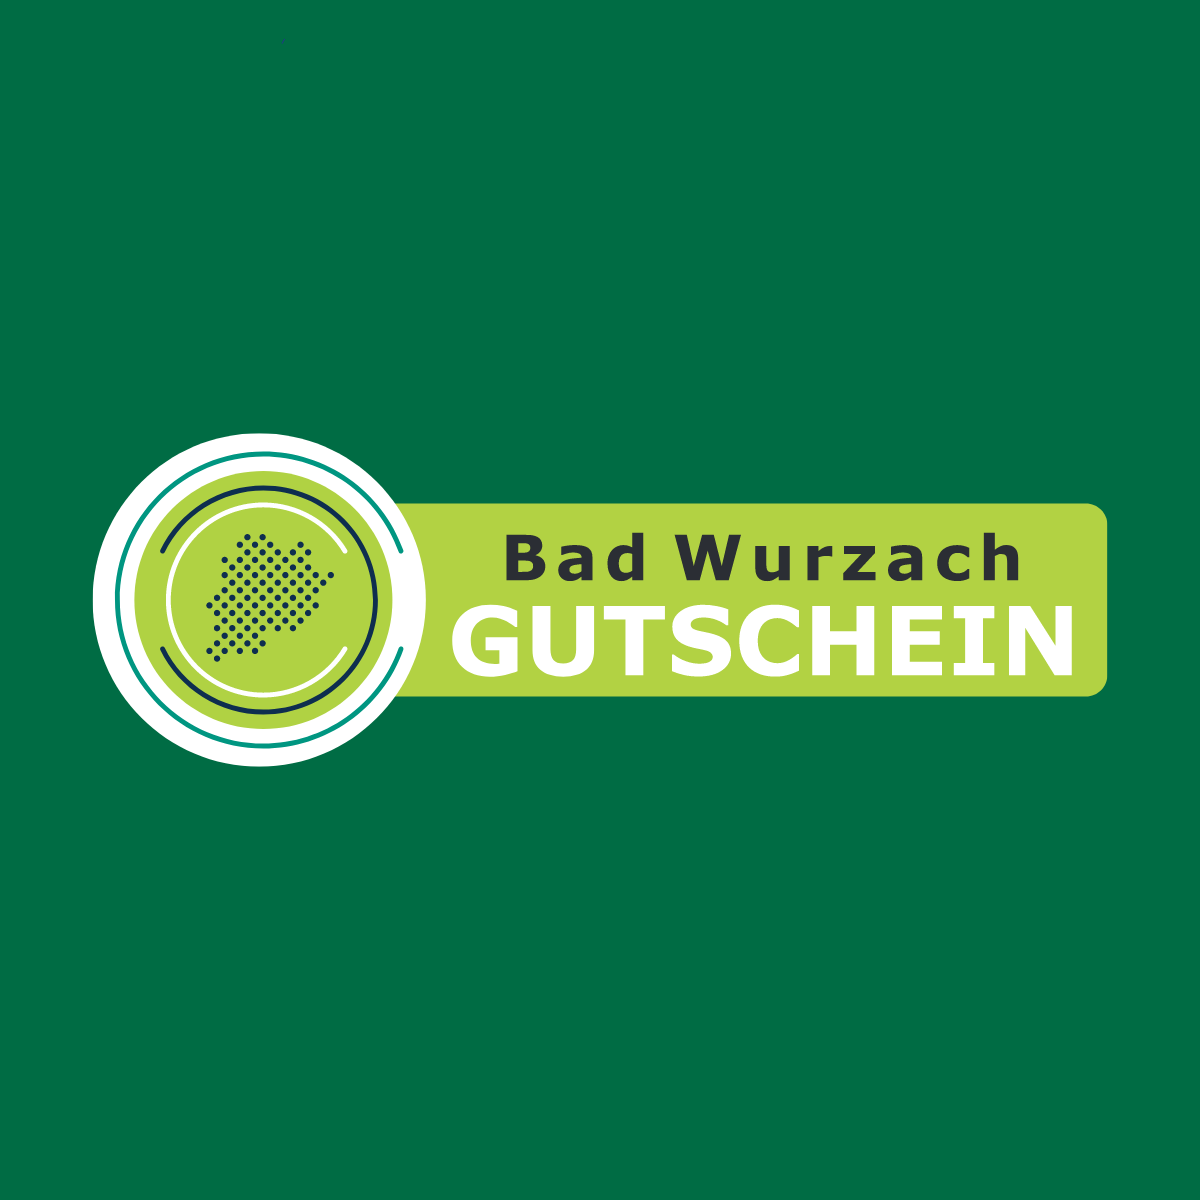 (c) Badwurzach-gutschein.de